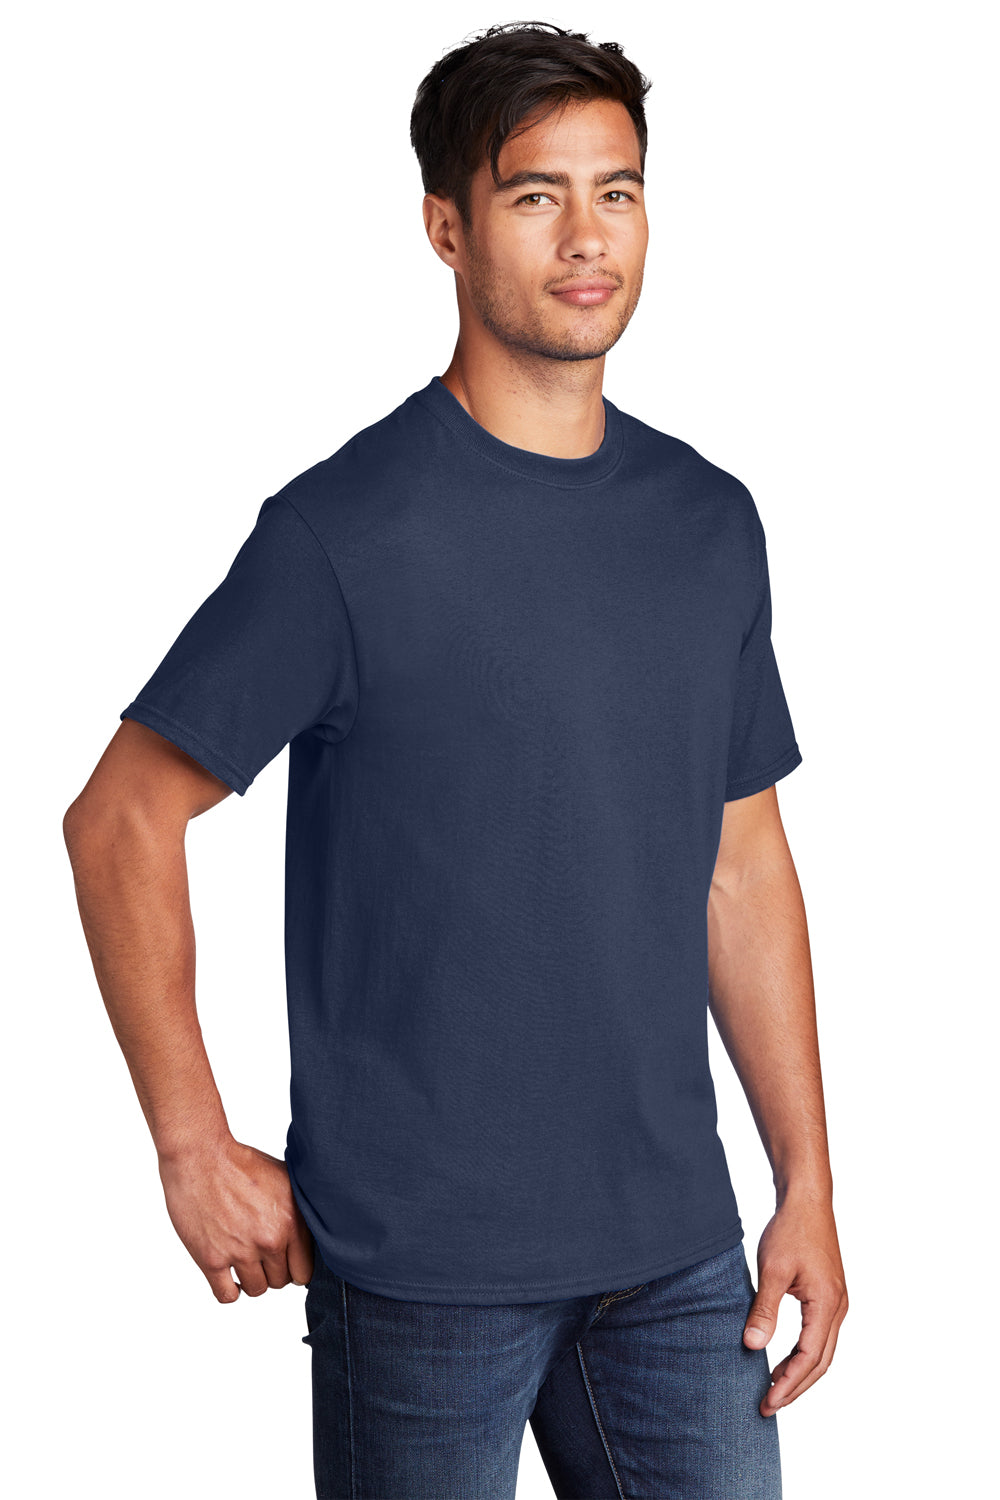 Port & Company PC54DTG Core Cotton DTG Short Sleeve Crewneck T-Shirt Navy Blue 3Q